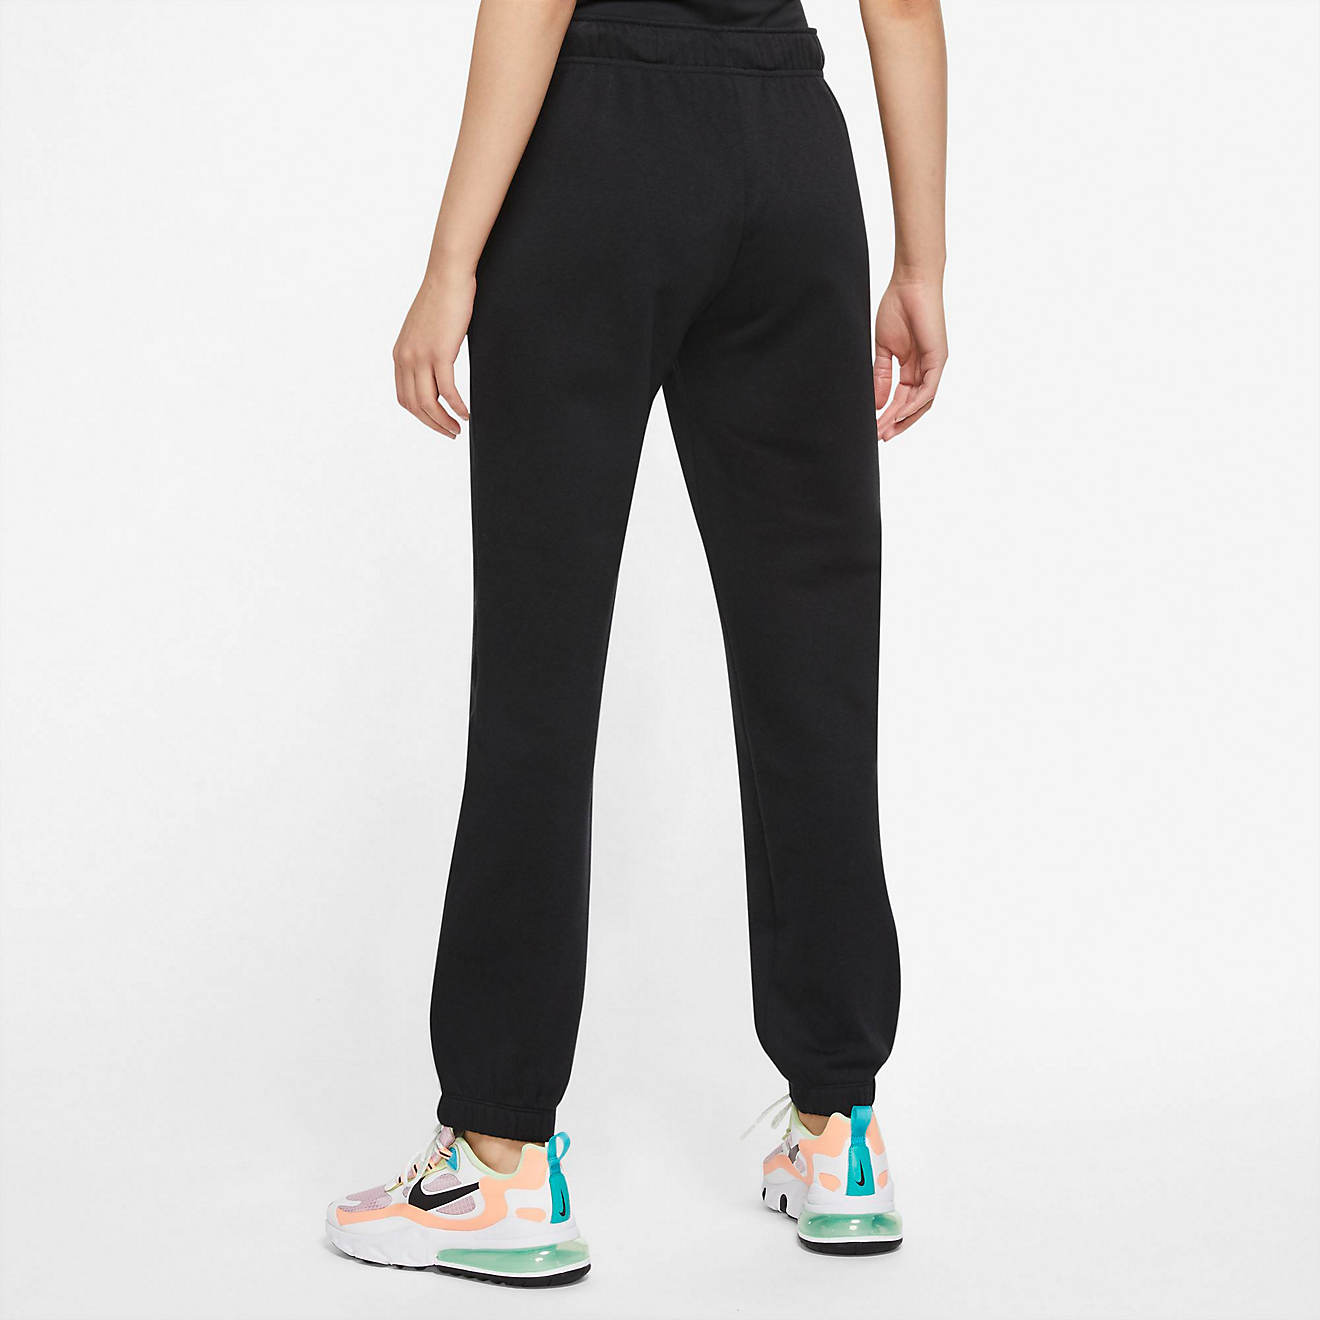 Nike Women's Sportswear Fitted Fleece Joggers | Academy